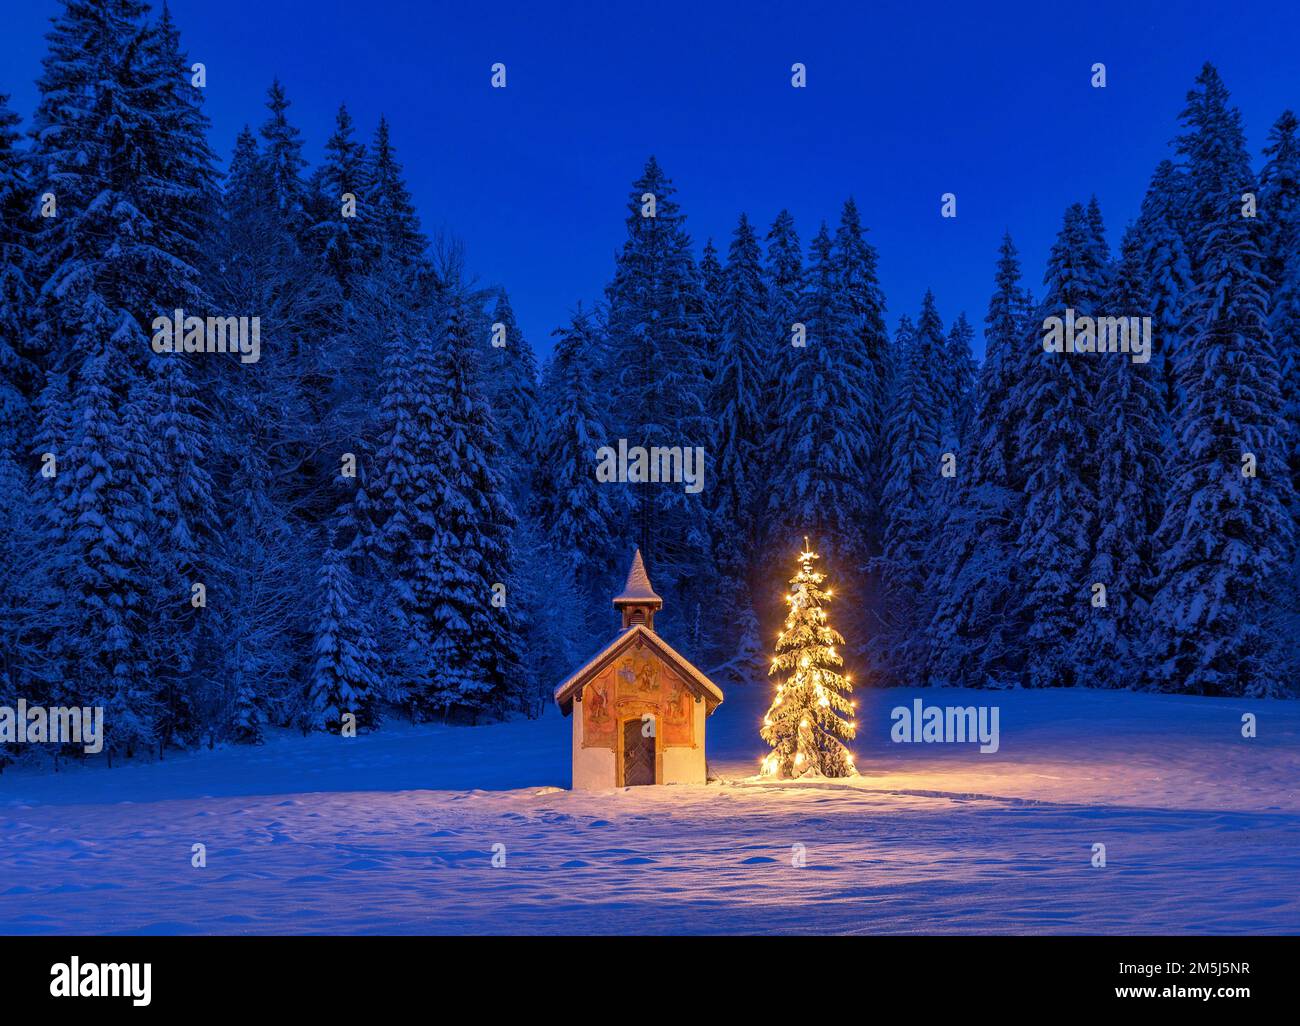 Beleuchteter Christbaum vor einer Kapelle im Winter, Bayern, Oberbayern, Deutschland, Europa  Illuminated Christmas tree in front of a chapel in winte Stock Photo